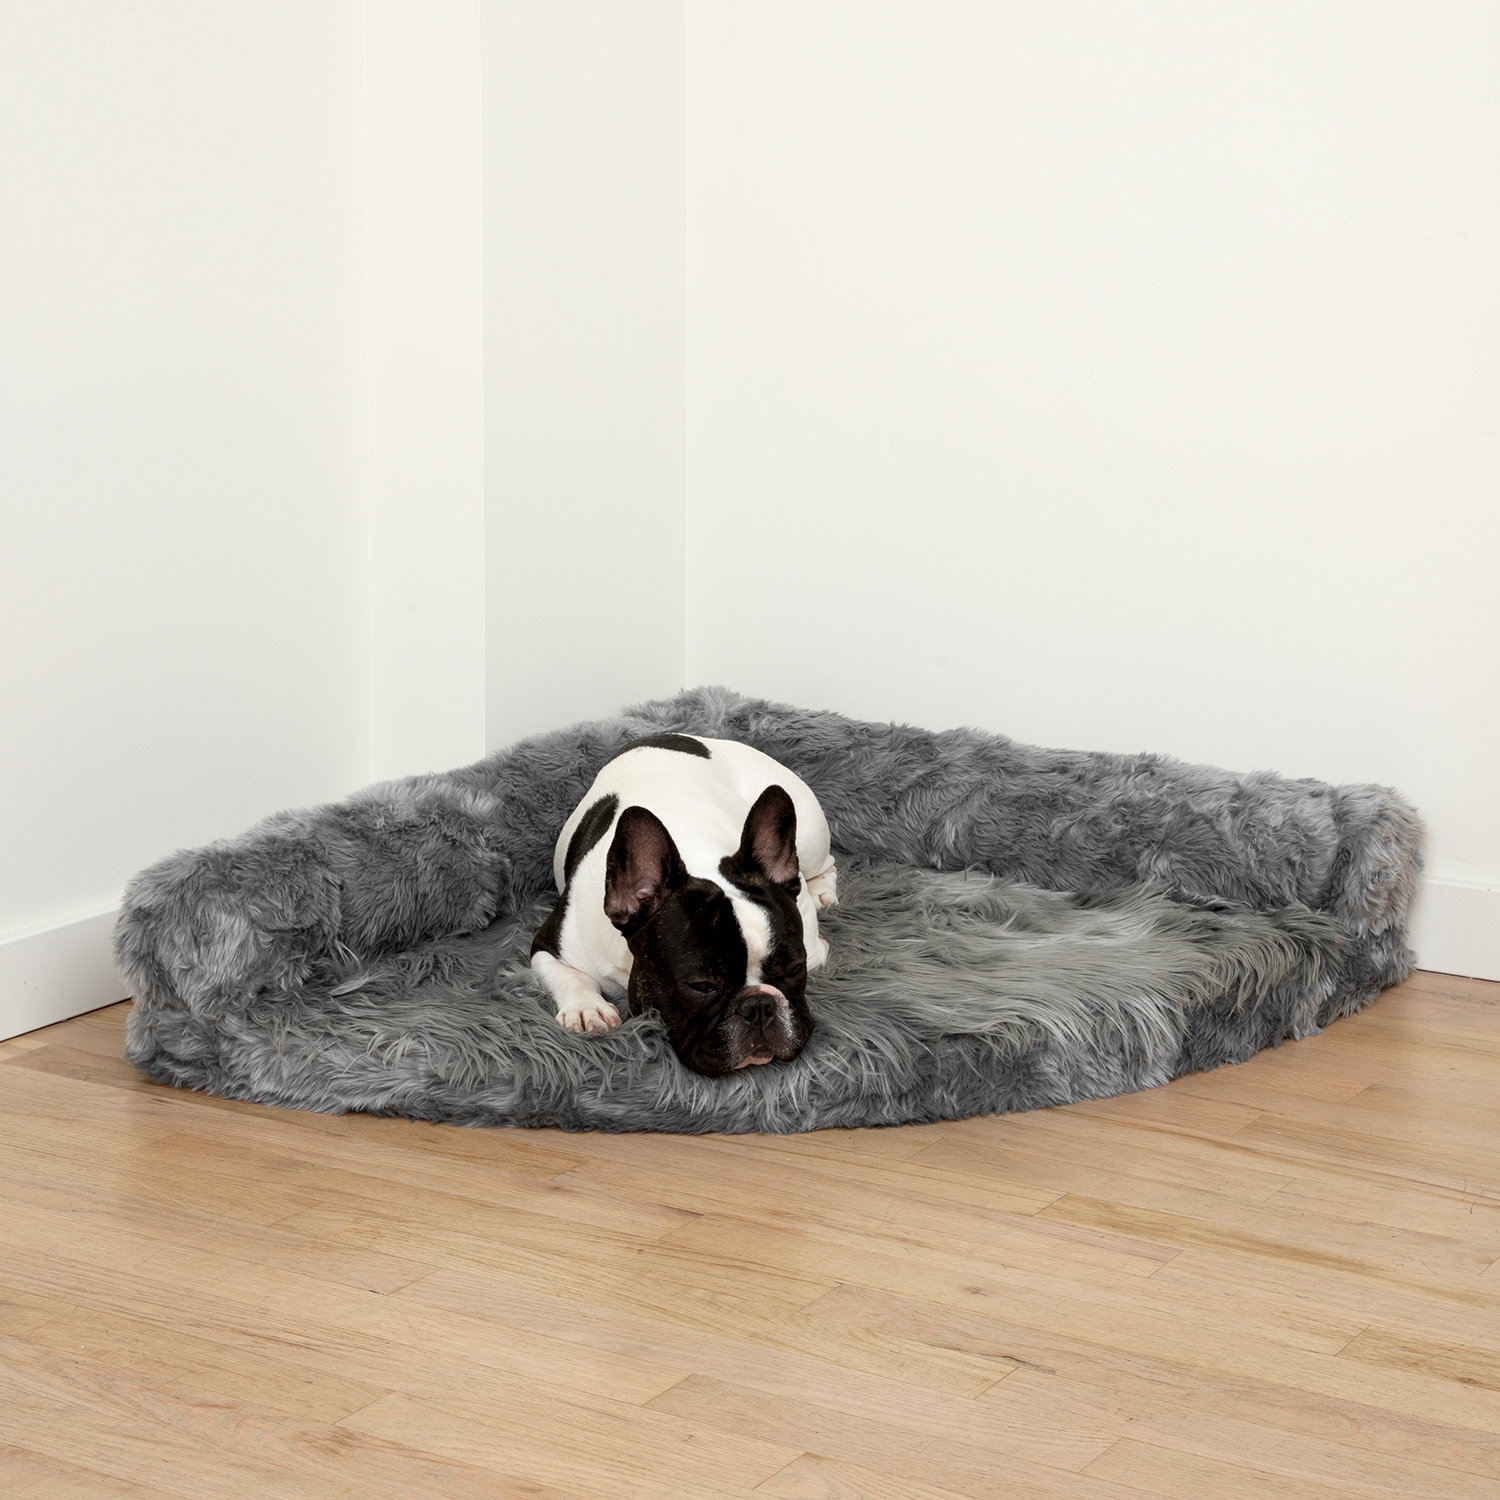 https://assets.wfcdn.com/im/26818586/compr-r85/2566/256673801/puprug-space-saver-memory-foam-corner-dog-bed.jpg